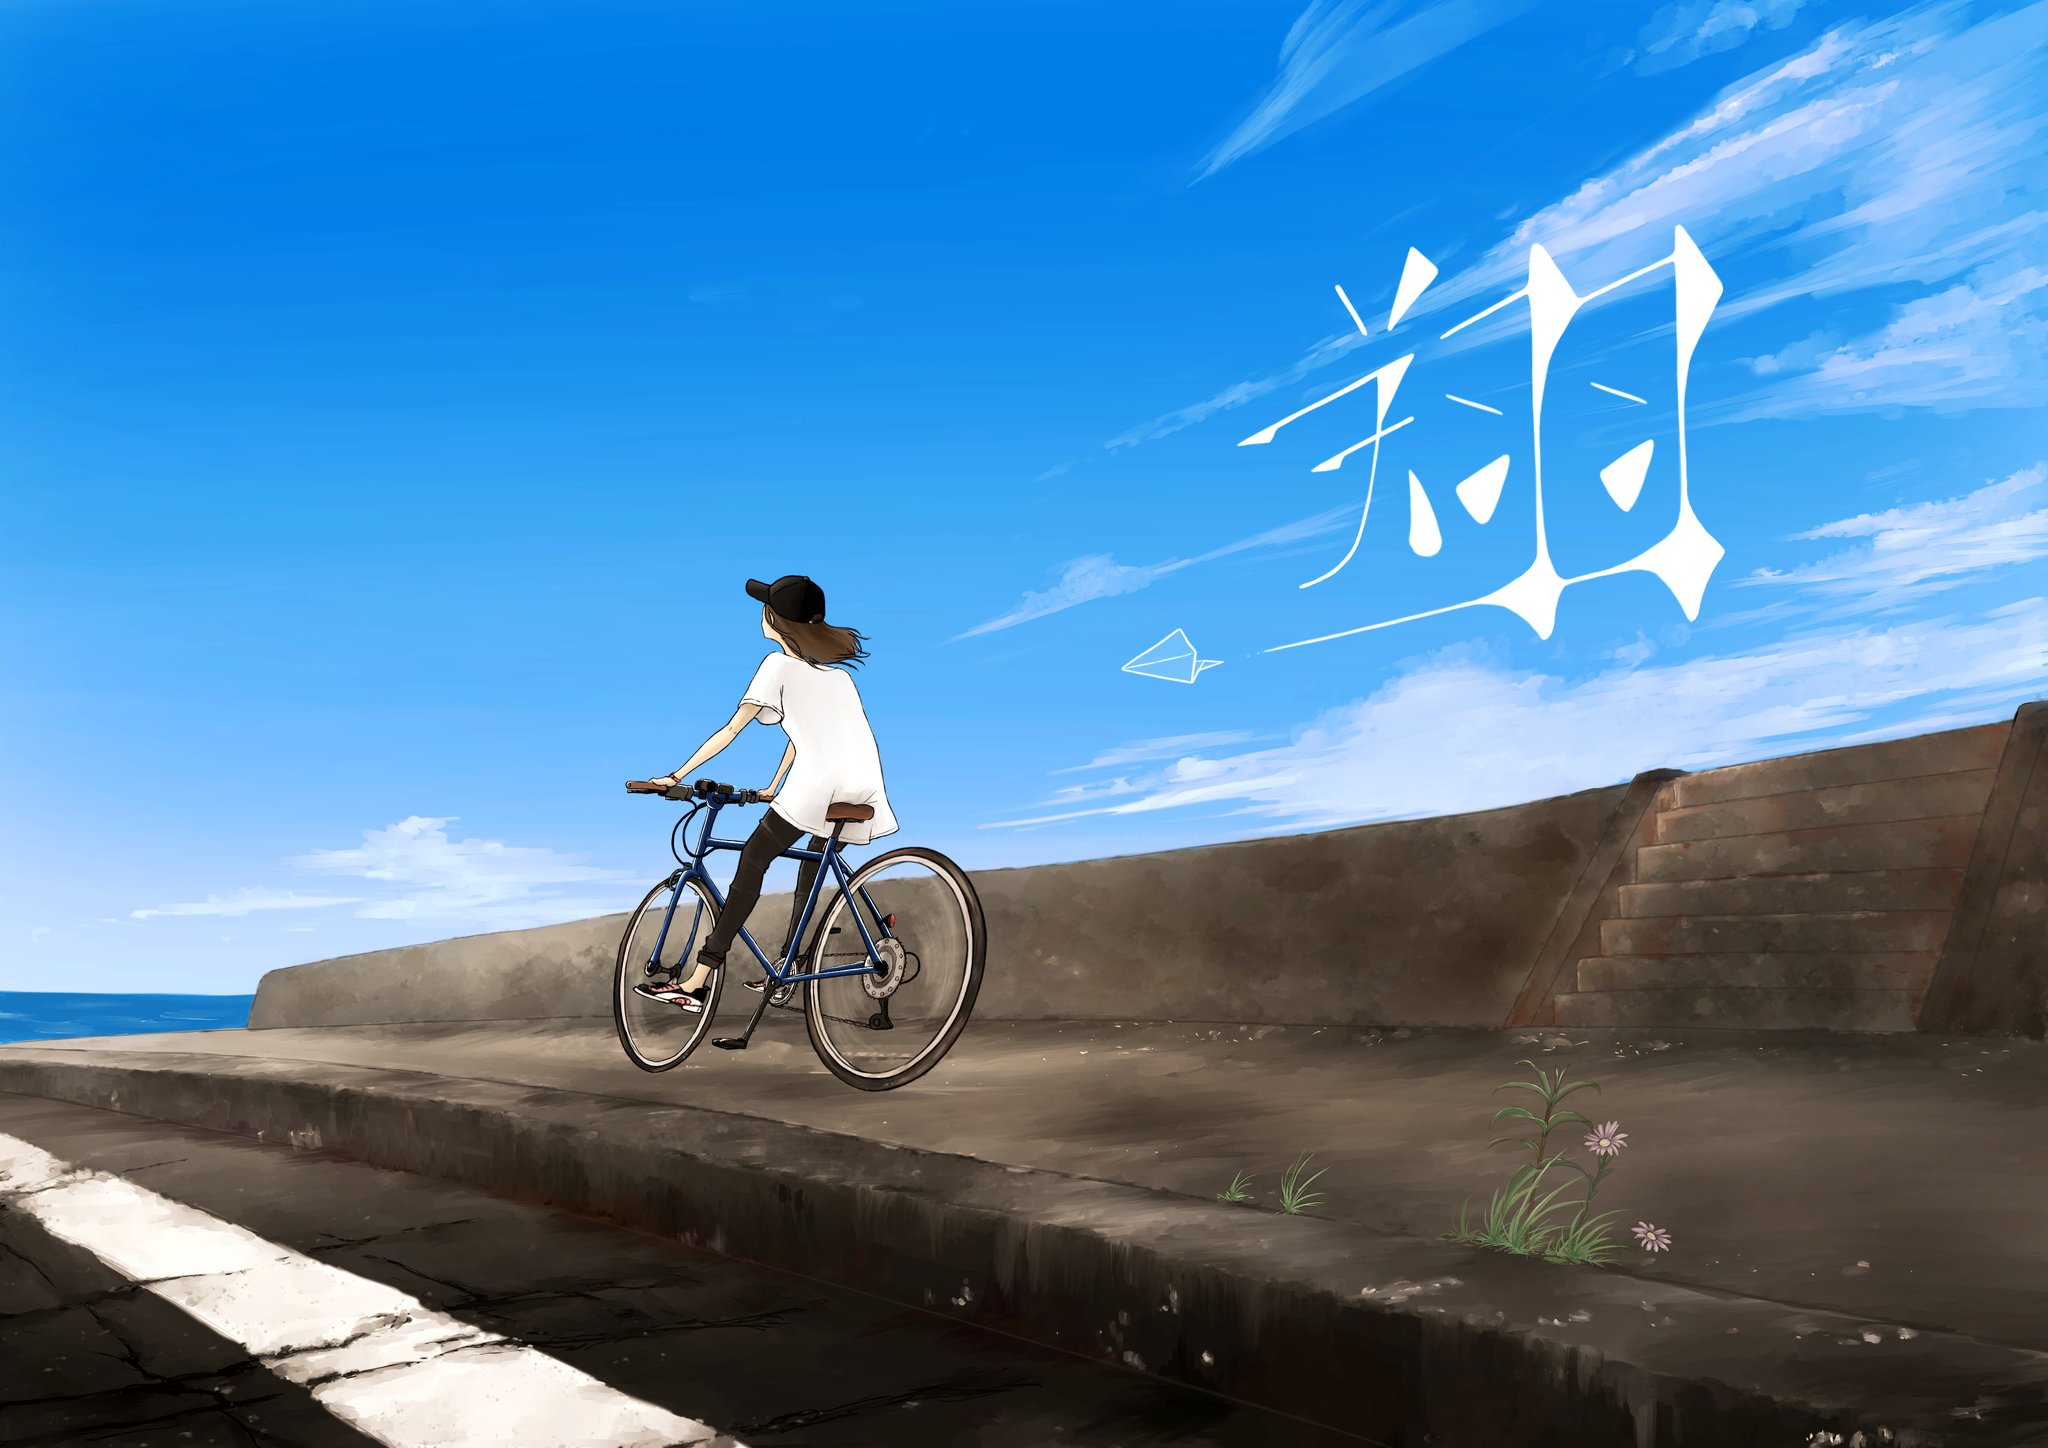 Twitter 上的 イシカワ ナオキ これ漢字間違えたんですよね 翔 て左側 羊 なんですね デザイン的にこっちの方が格好いいと思うんですけどね 間違ってるけど Illustration Original Art Ikana イラスト オリジナルイラスト 空 海 夏 自転車